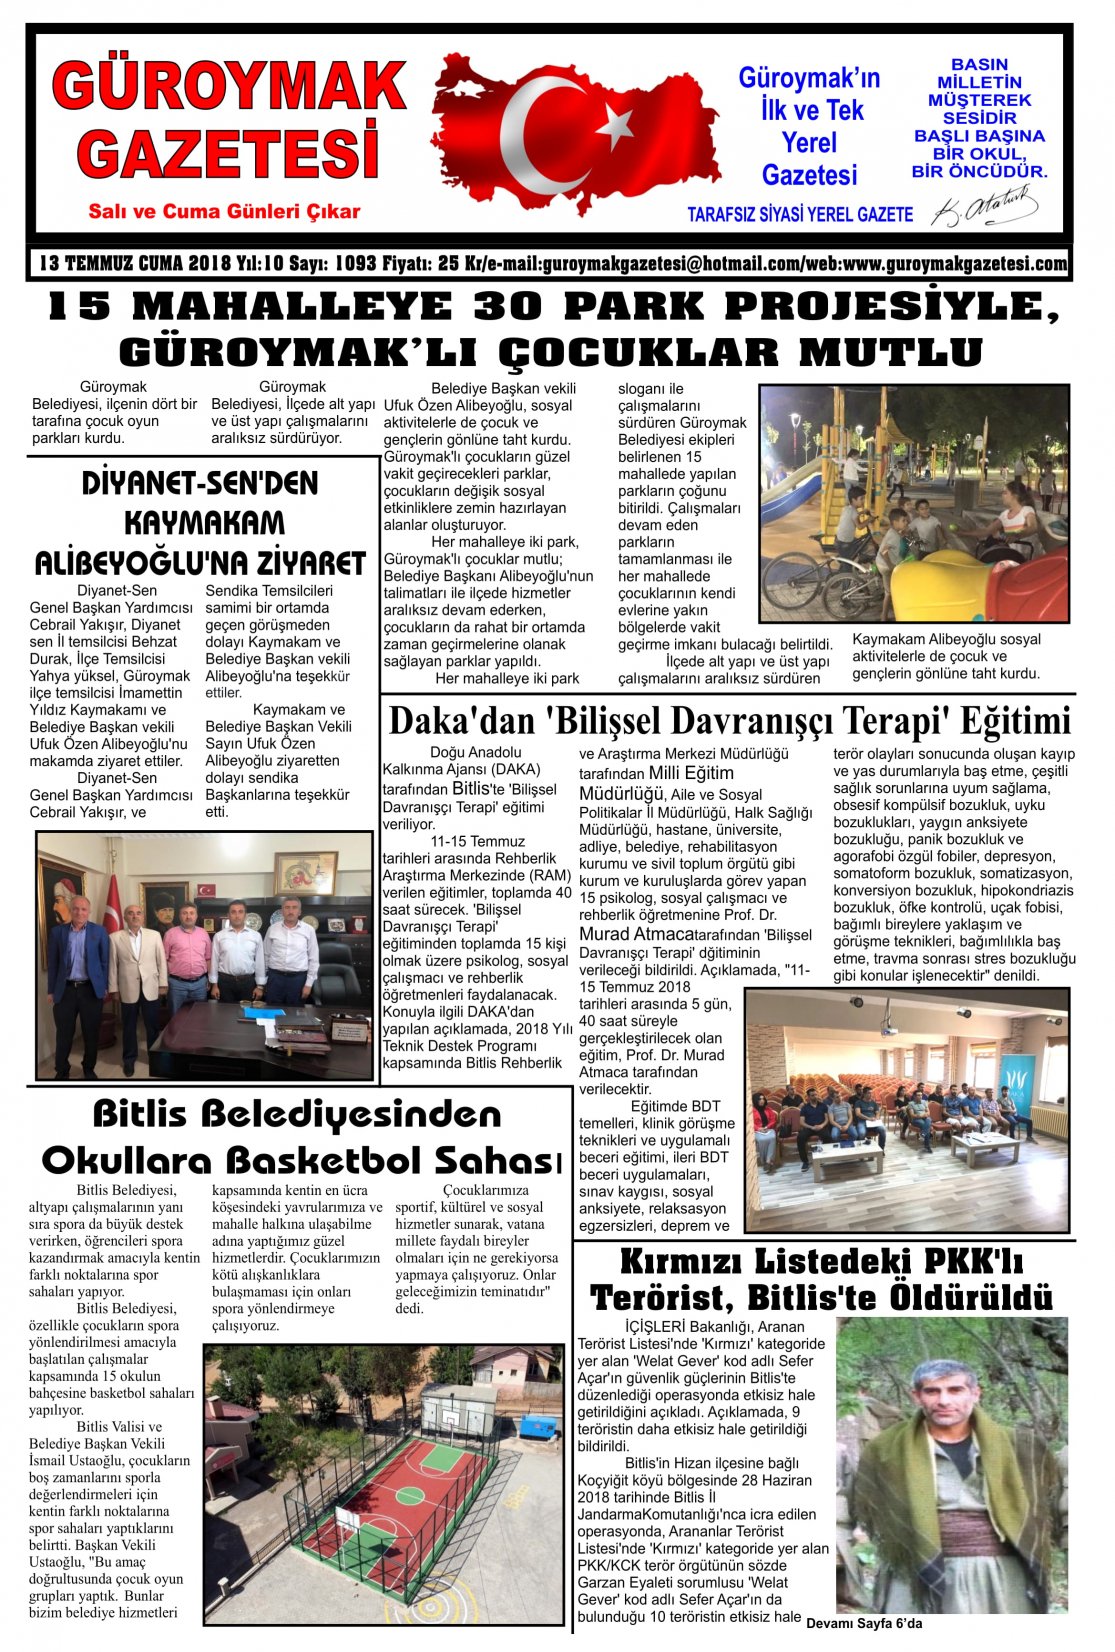 Güroymak Gazetesi 1-01.jpg Sayılı Gazete Küpürü